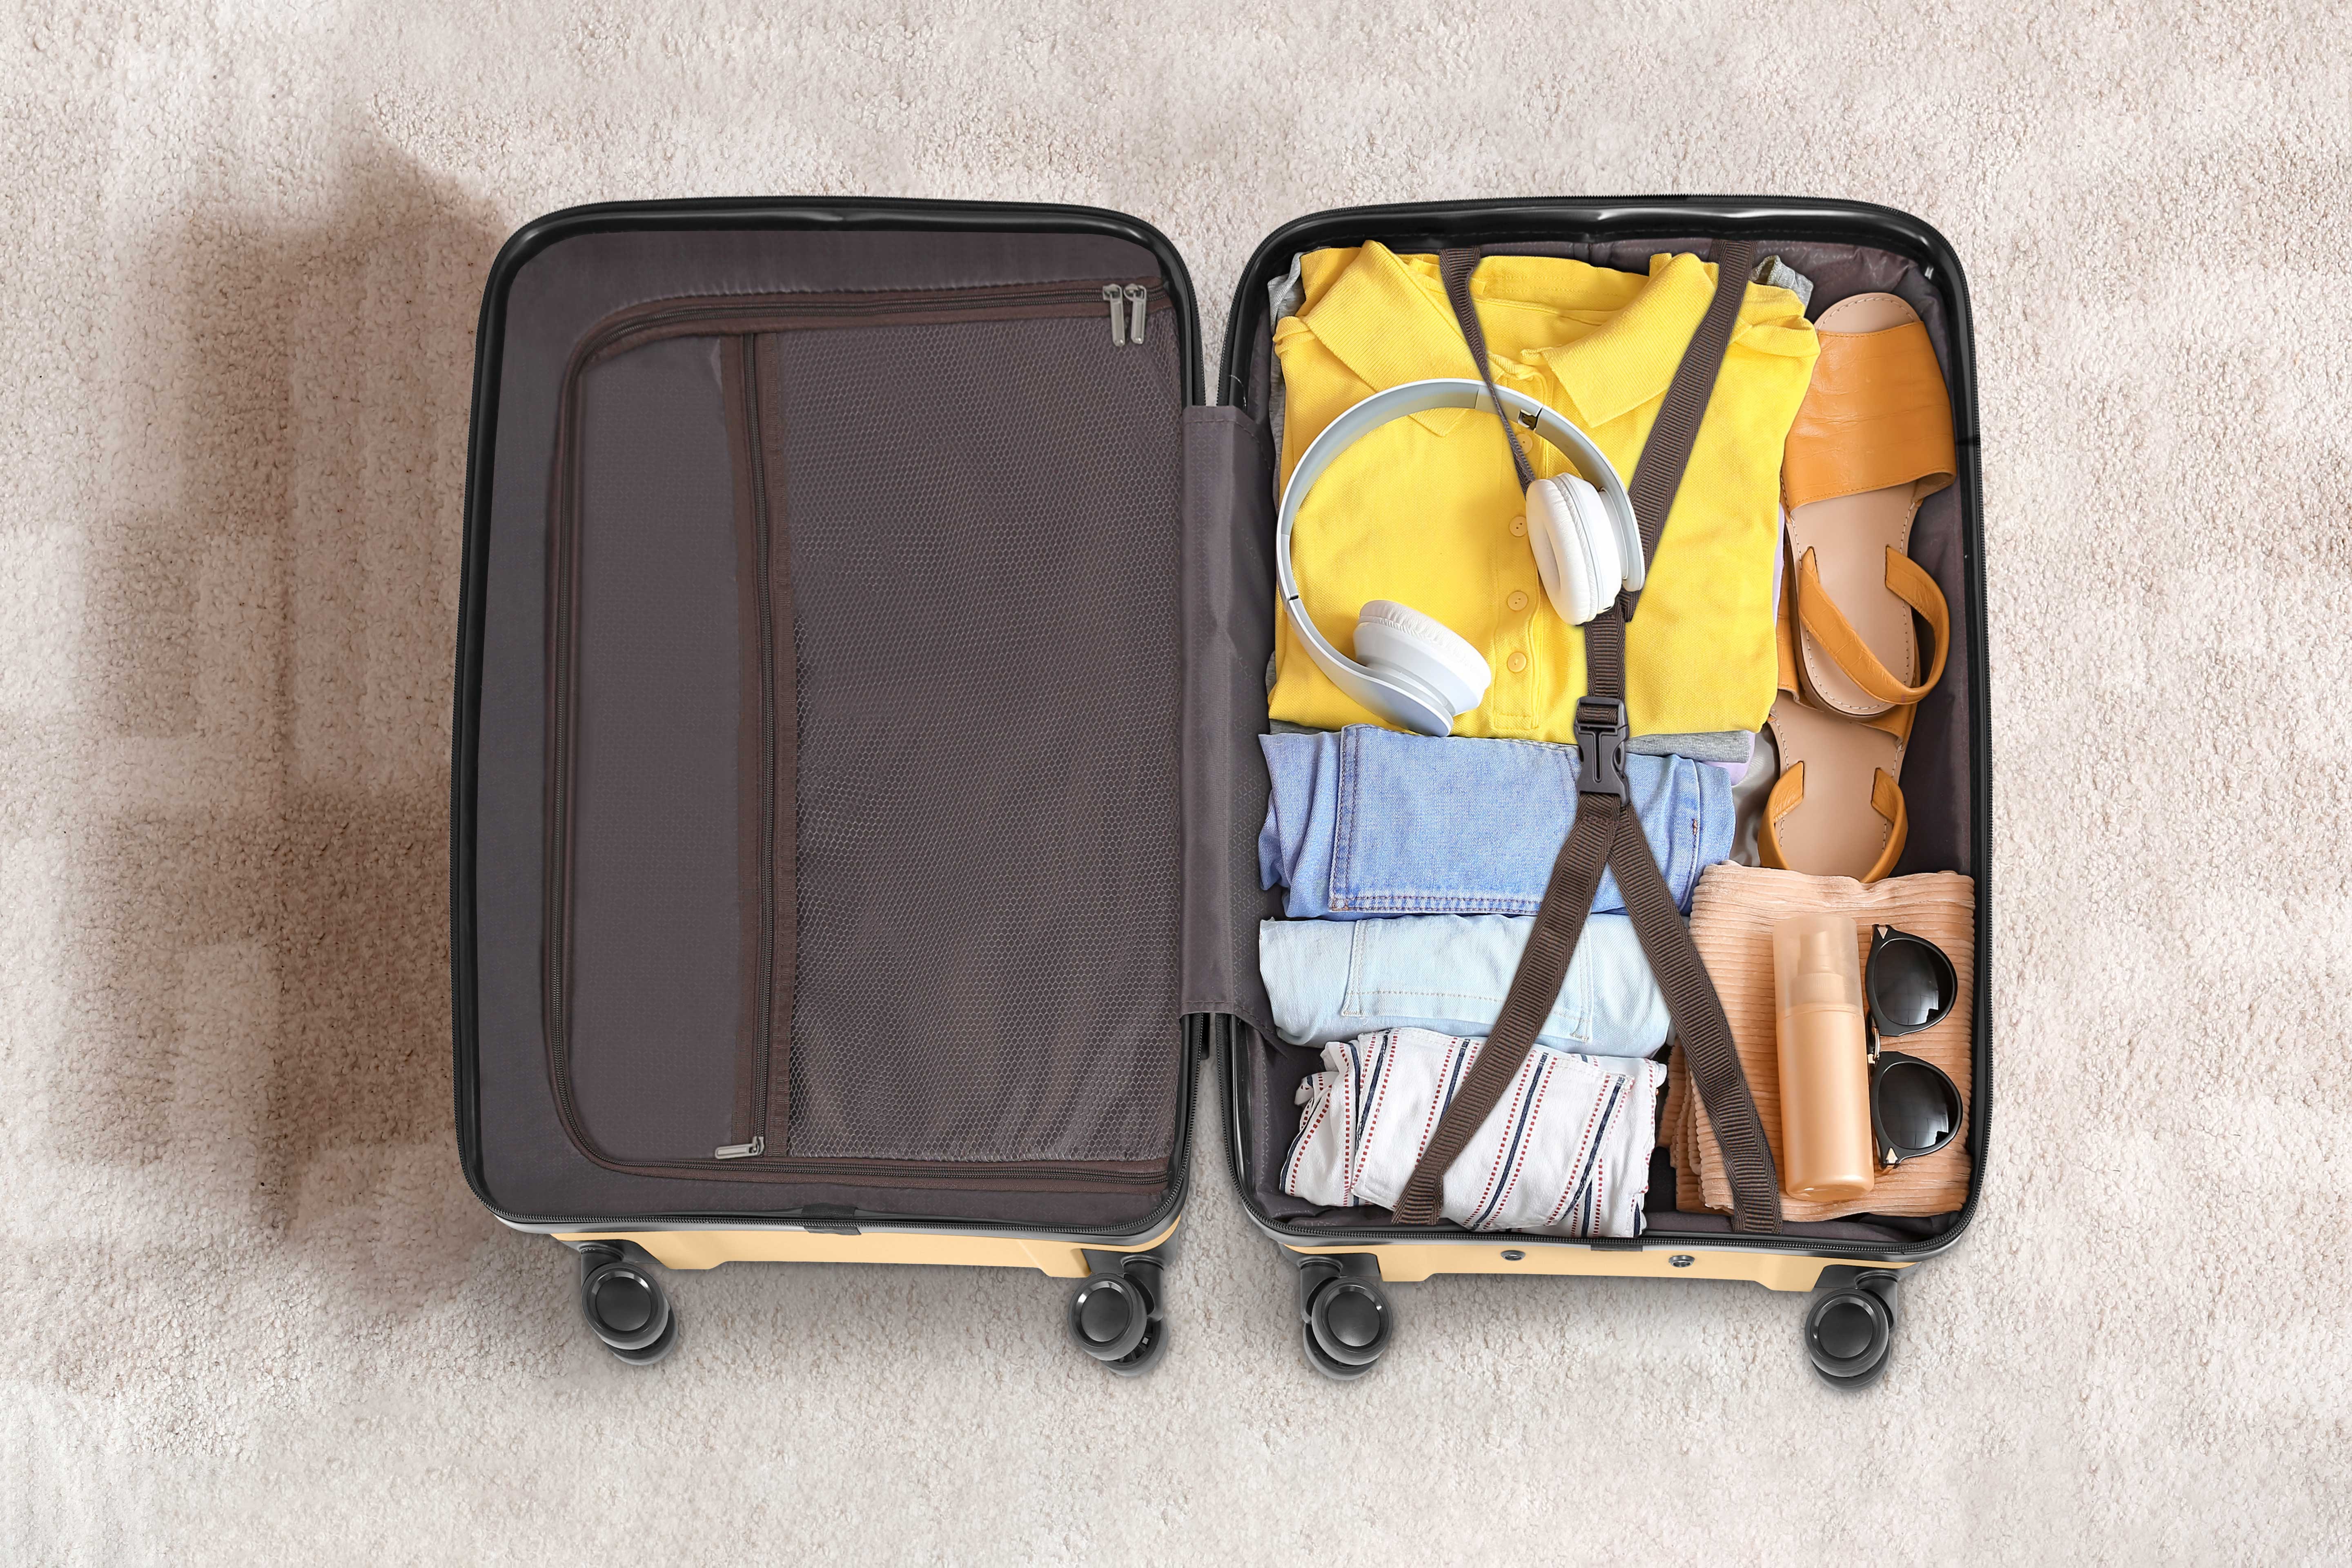 Maleta mediana: Los 5 Mejores Productos de Viaje: La maleta